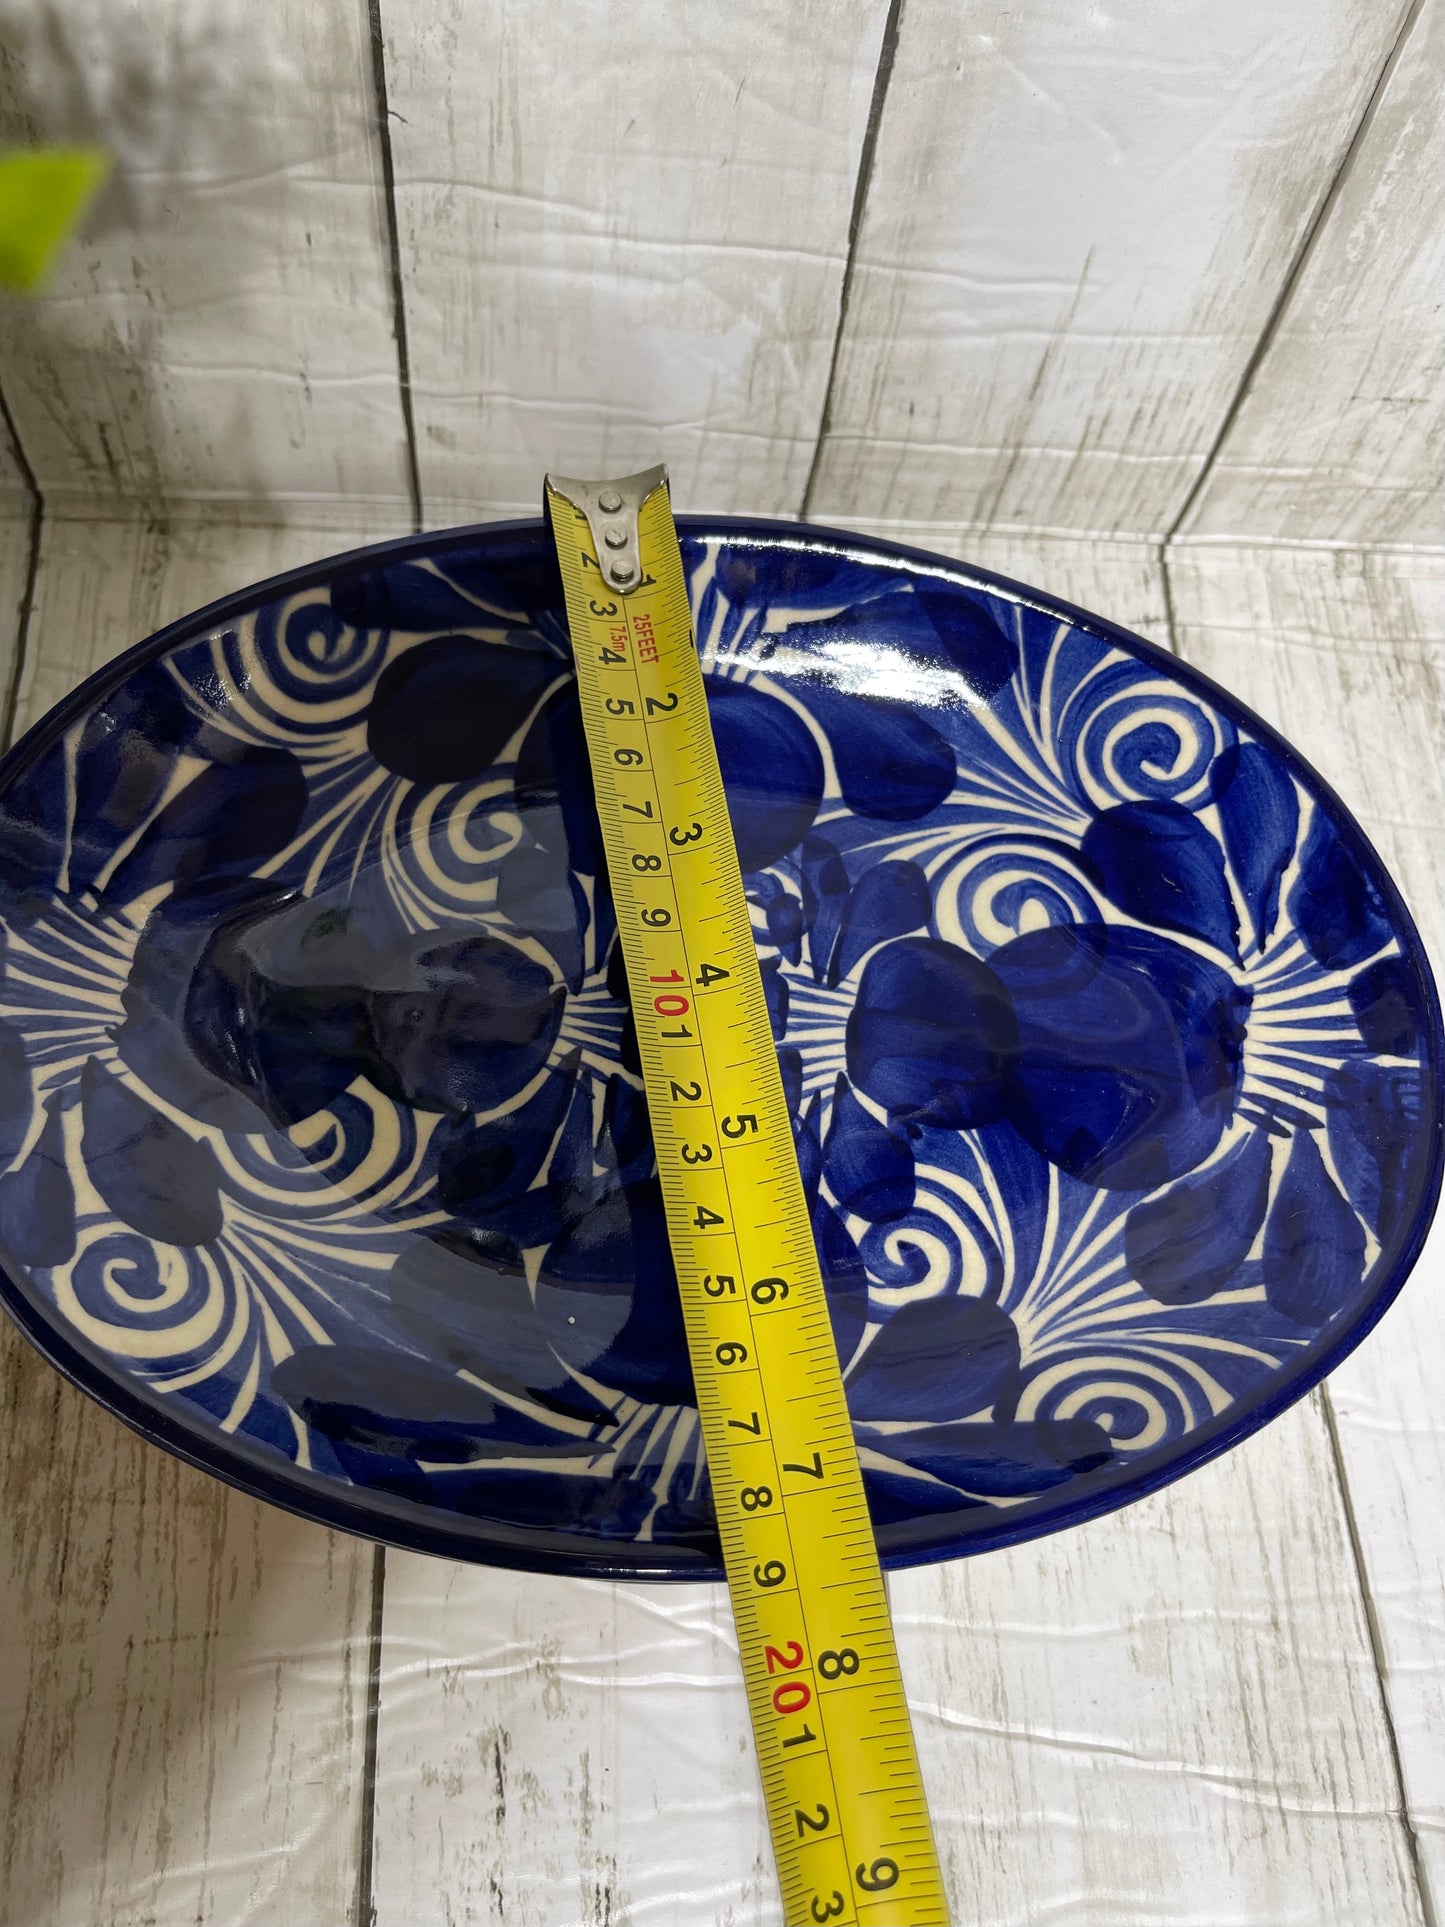 Talavera Guanajuato oval plate/blue ceramic